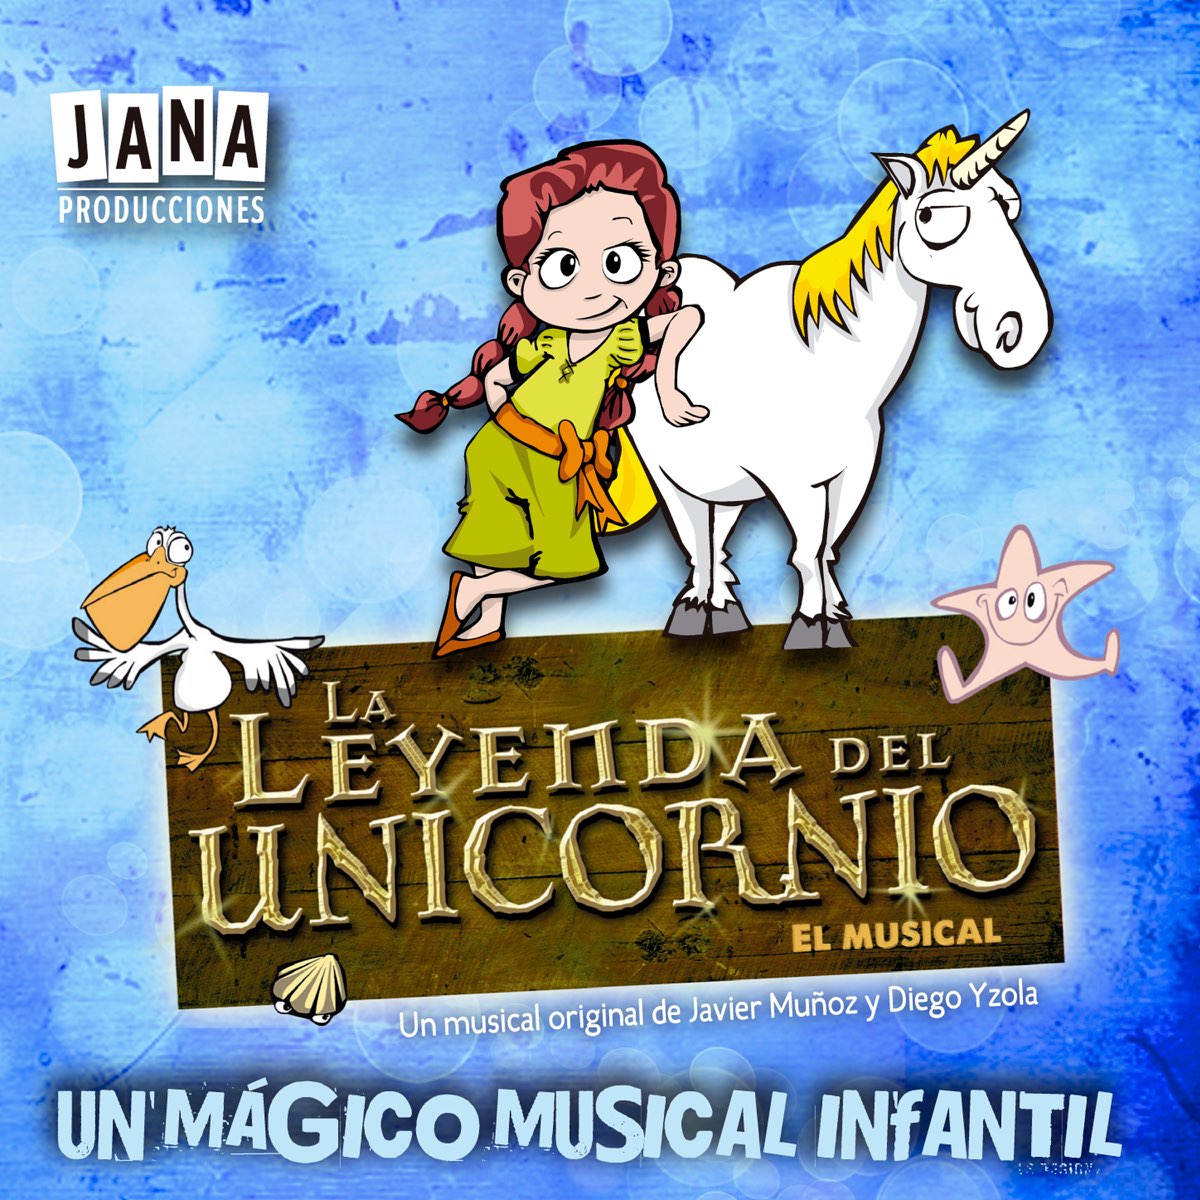 La Leyenda del Unicornio (Original Score) - Album by Jana Producciones -  Apple Music